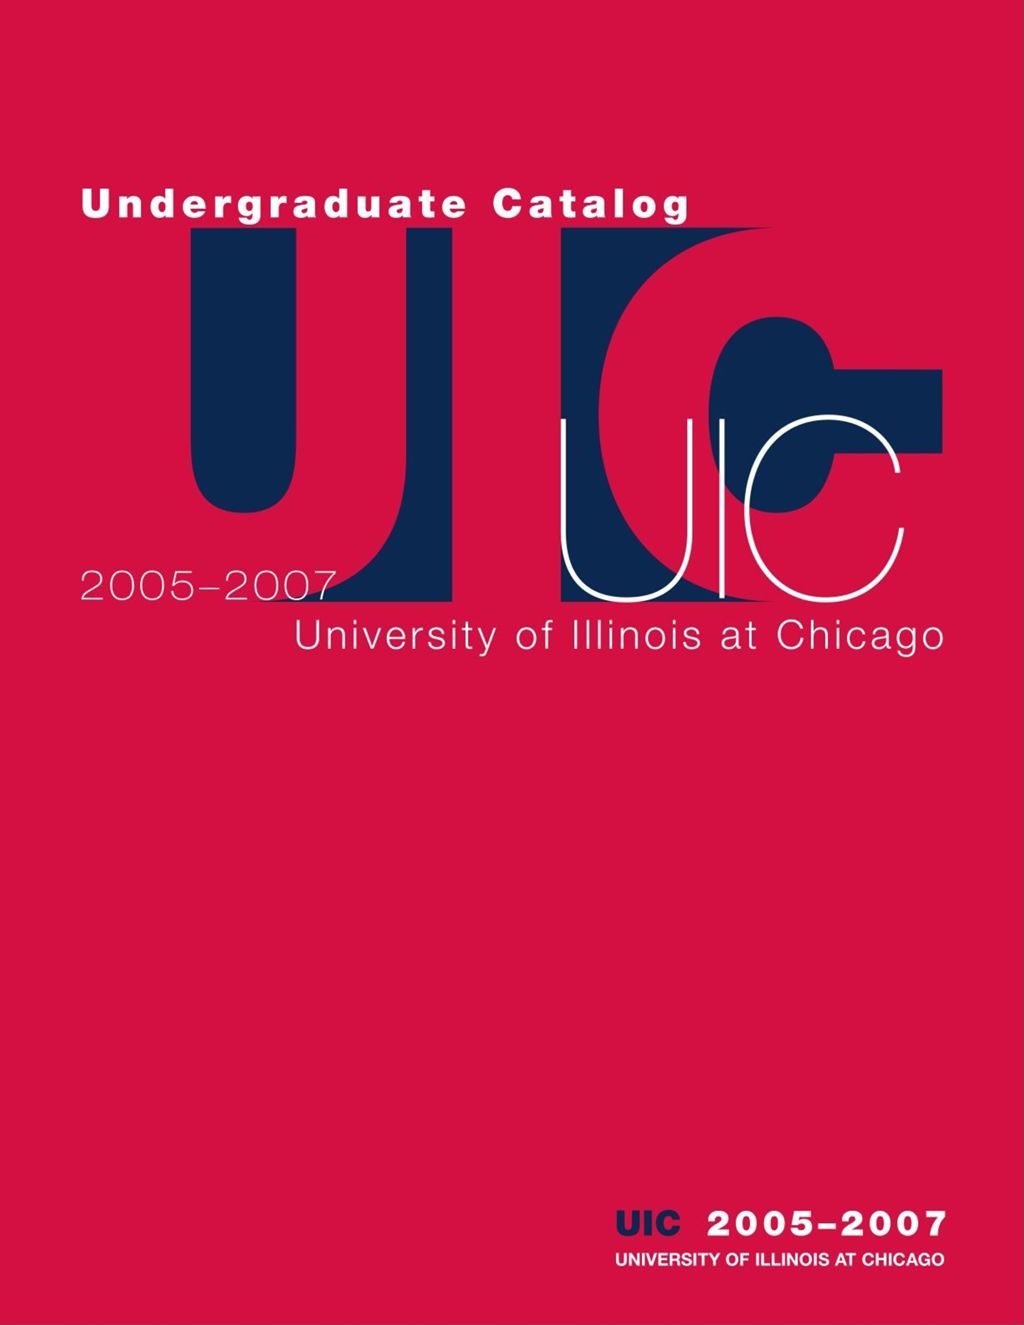 Miniature of Undergraduate Catalog, 2005-2007